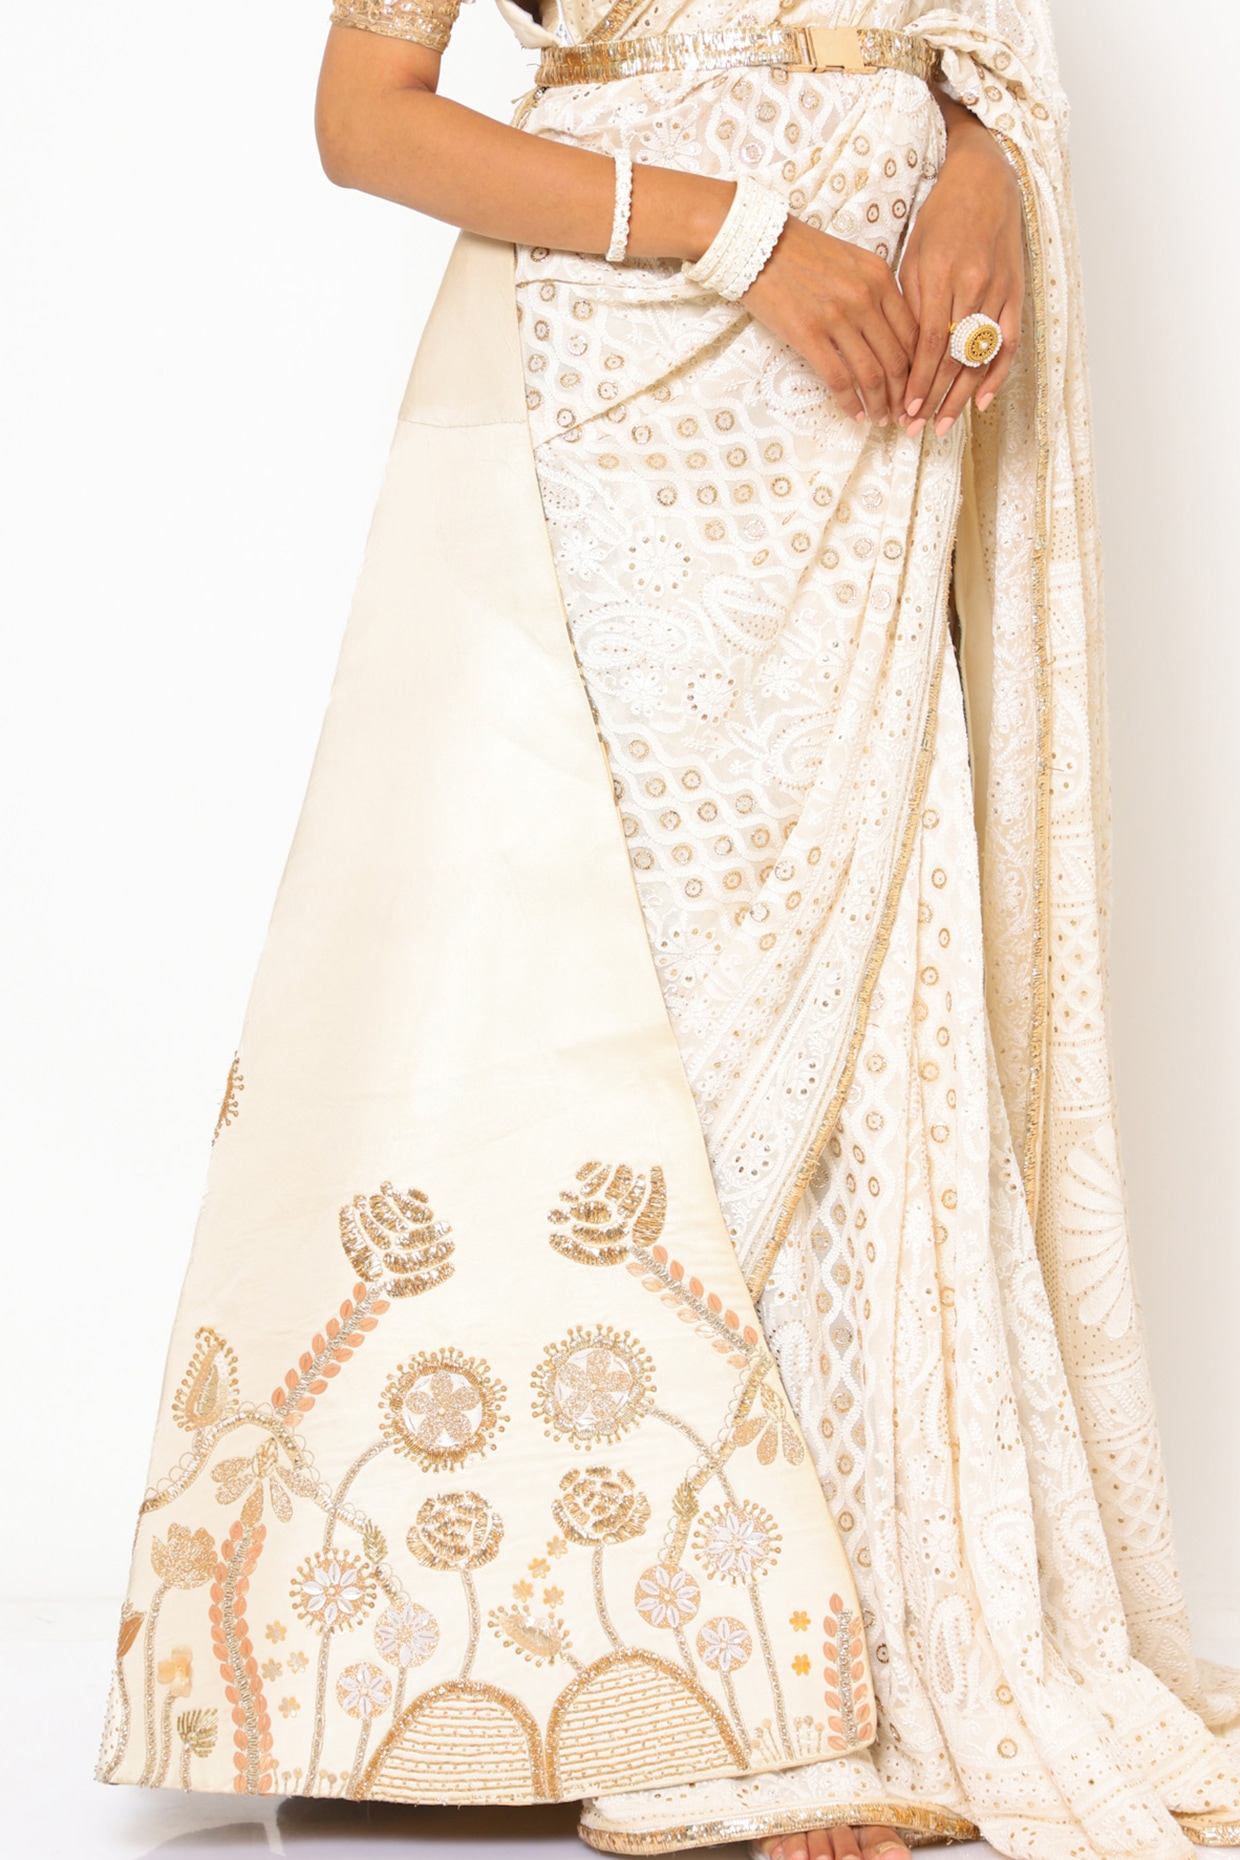 Bollywood Chikankari Sarees | Bollywood designer sarees, Deepika padukone  saree, Saree designs